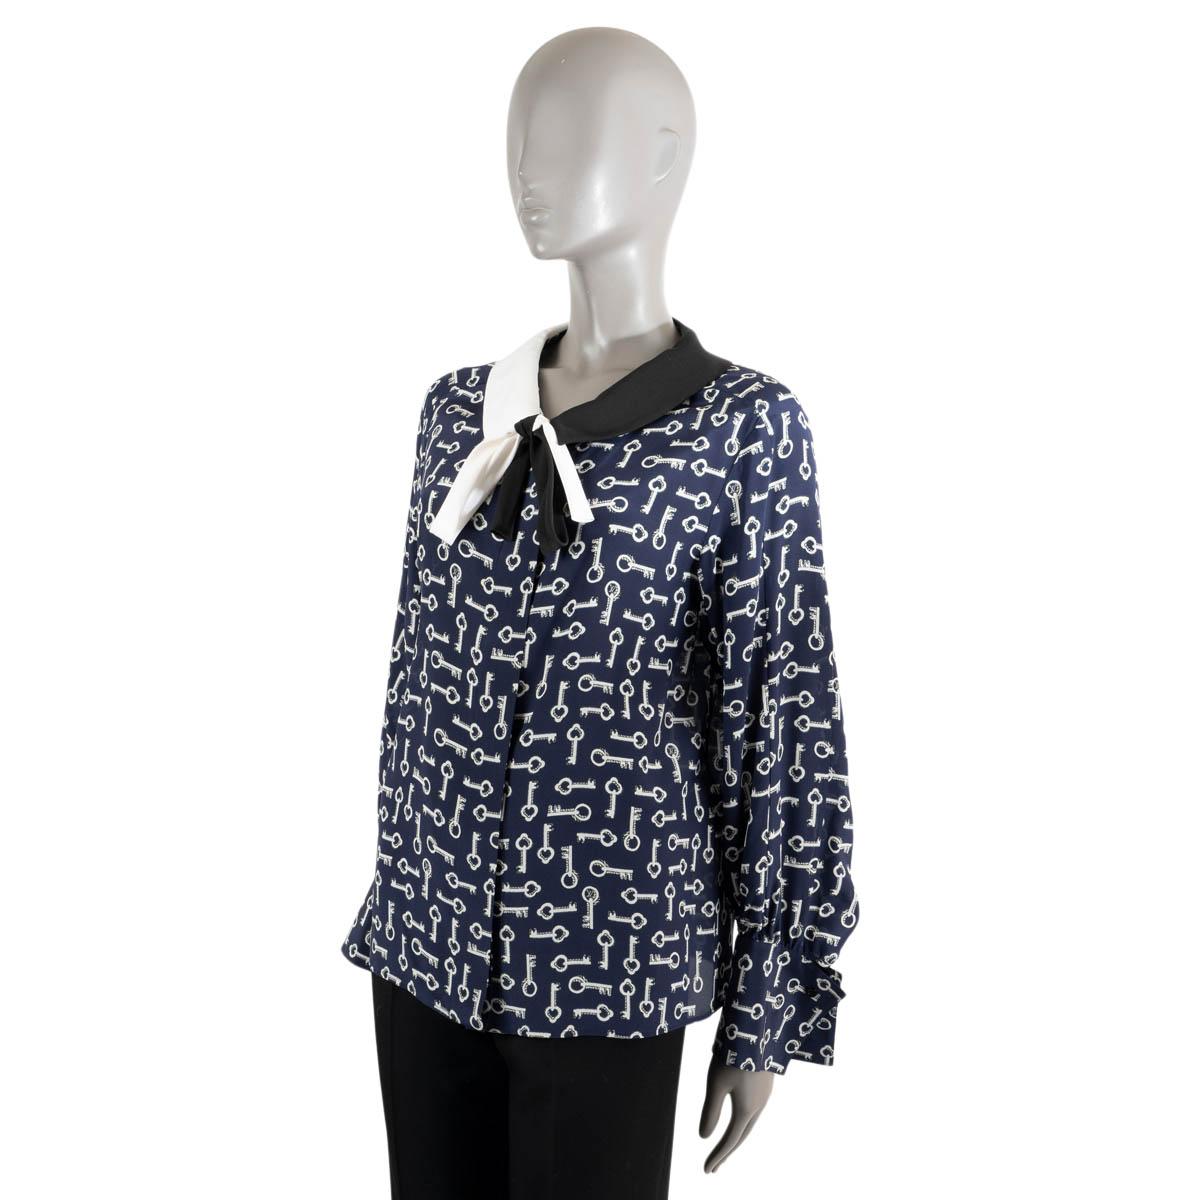 LOUIS VUITTON marineblaues & weißes Seidenhemd KEY PRINT in Marineblau & Weiß 36 XS Damen im Angebot